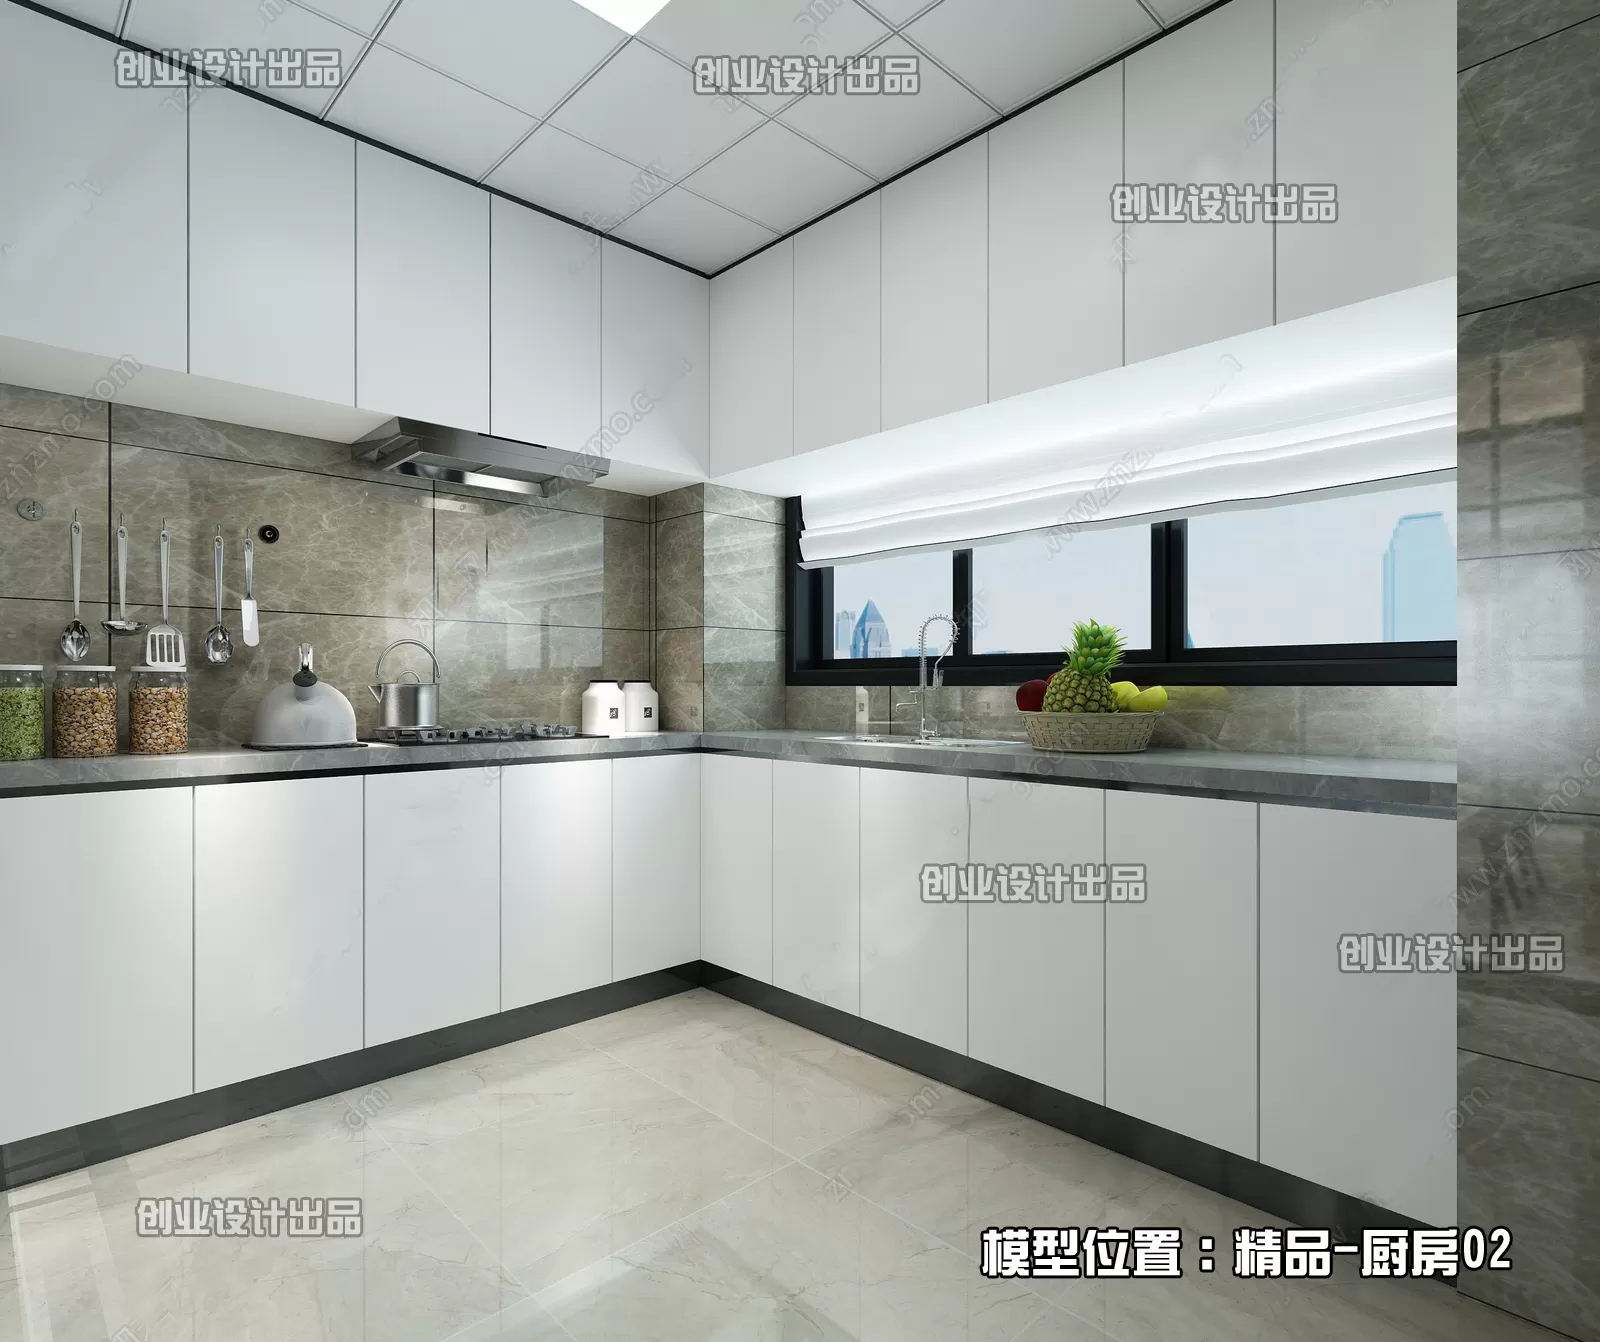 Kitchen – Modern Interior Design – 3D Models – 046